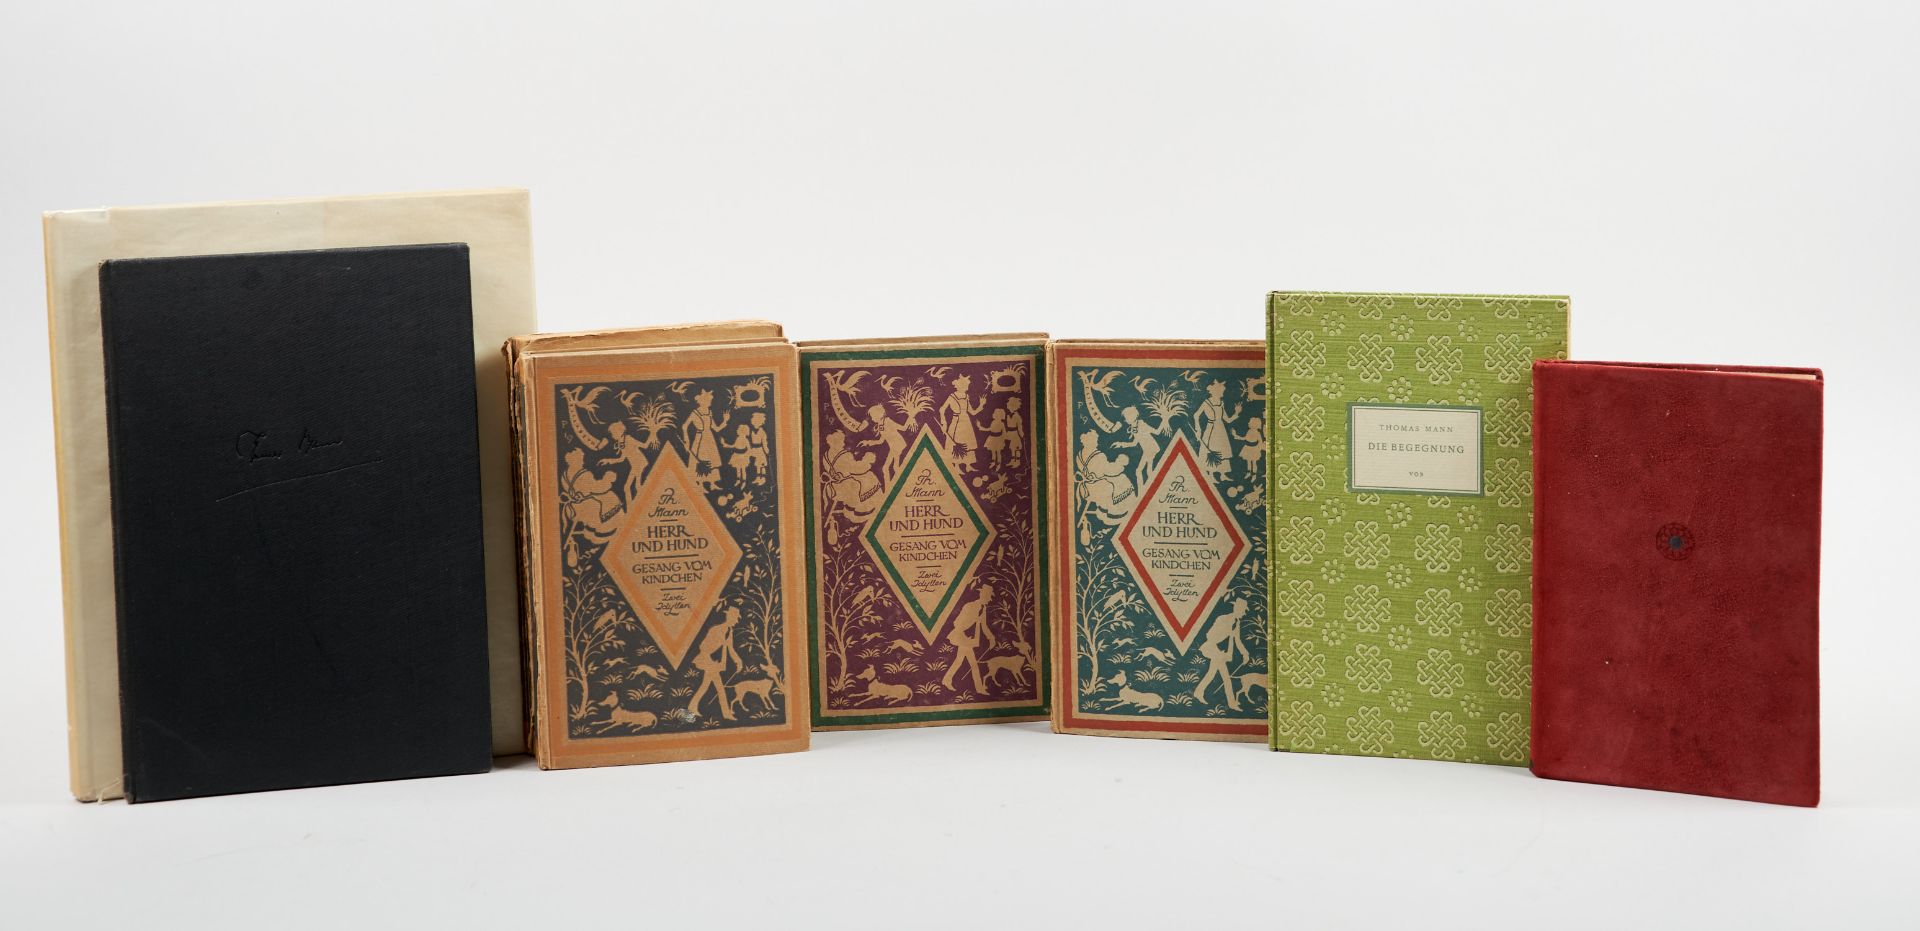 Mann Sammlung von 7 Bänden mit Werken von Thomas Mann in ersten oder frühen Ausgaben. 1915-1953. (